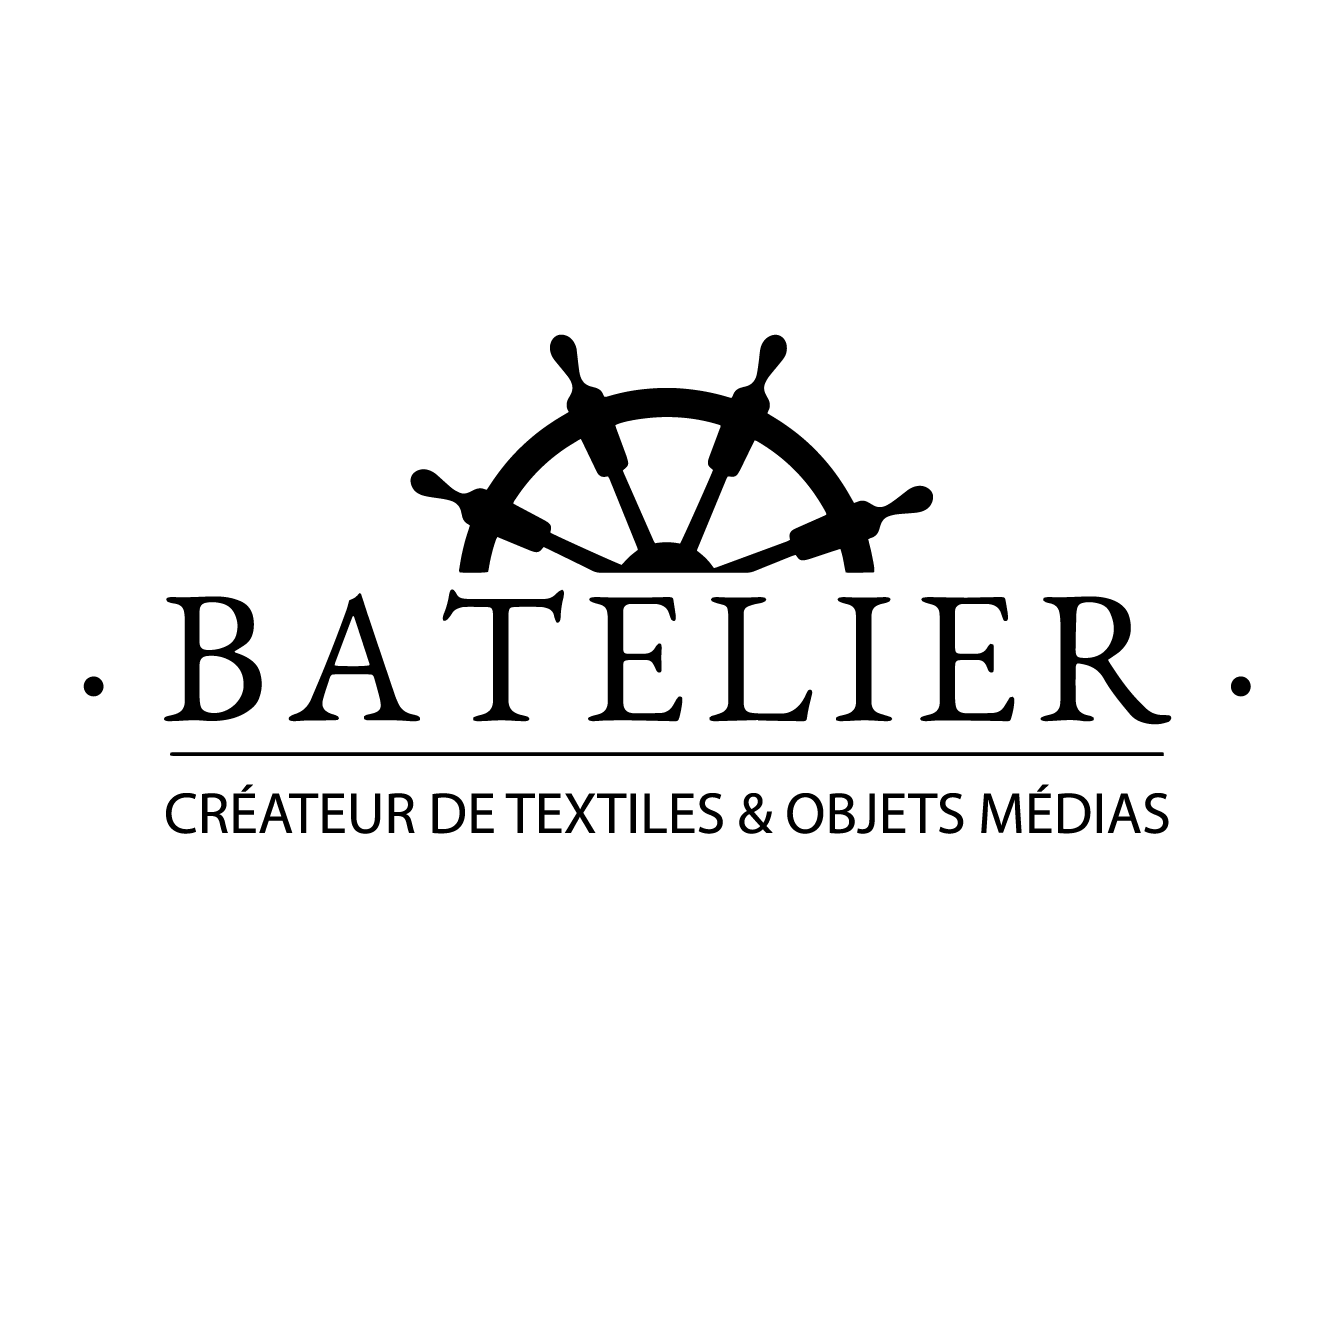 Batelier créateur textiles et objets médias pour pour les professionnels